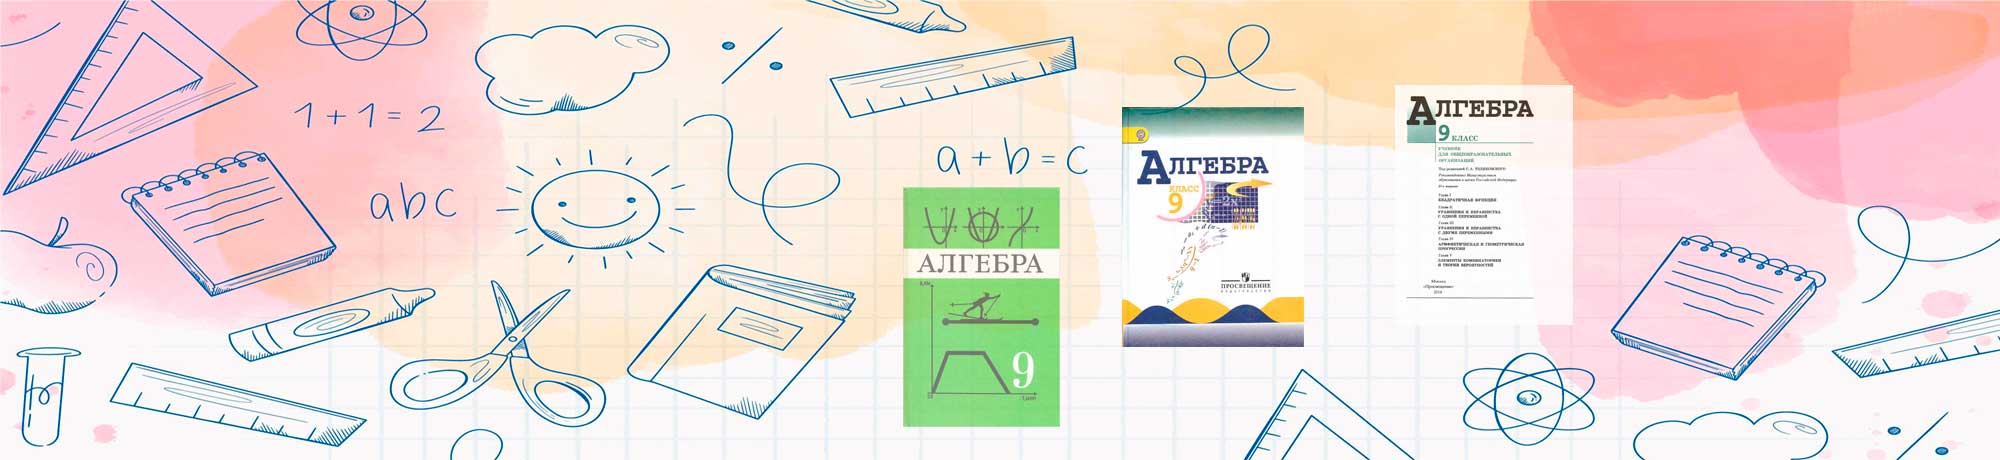 Обложка и первые страница учебника по алгебре - 9 класс.